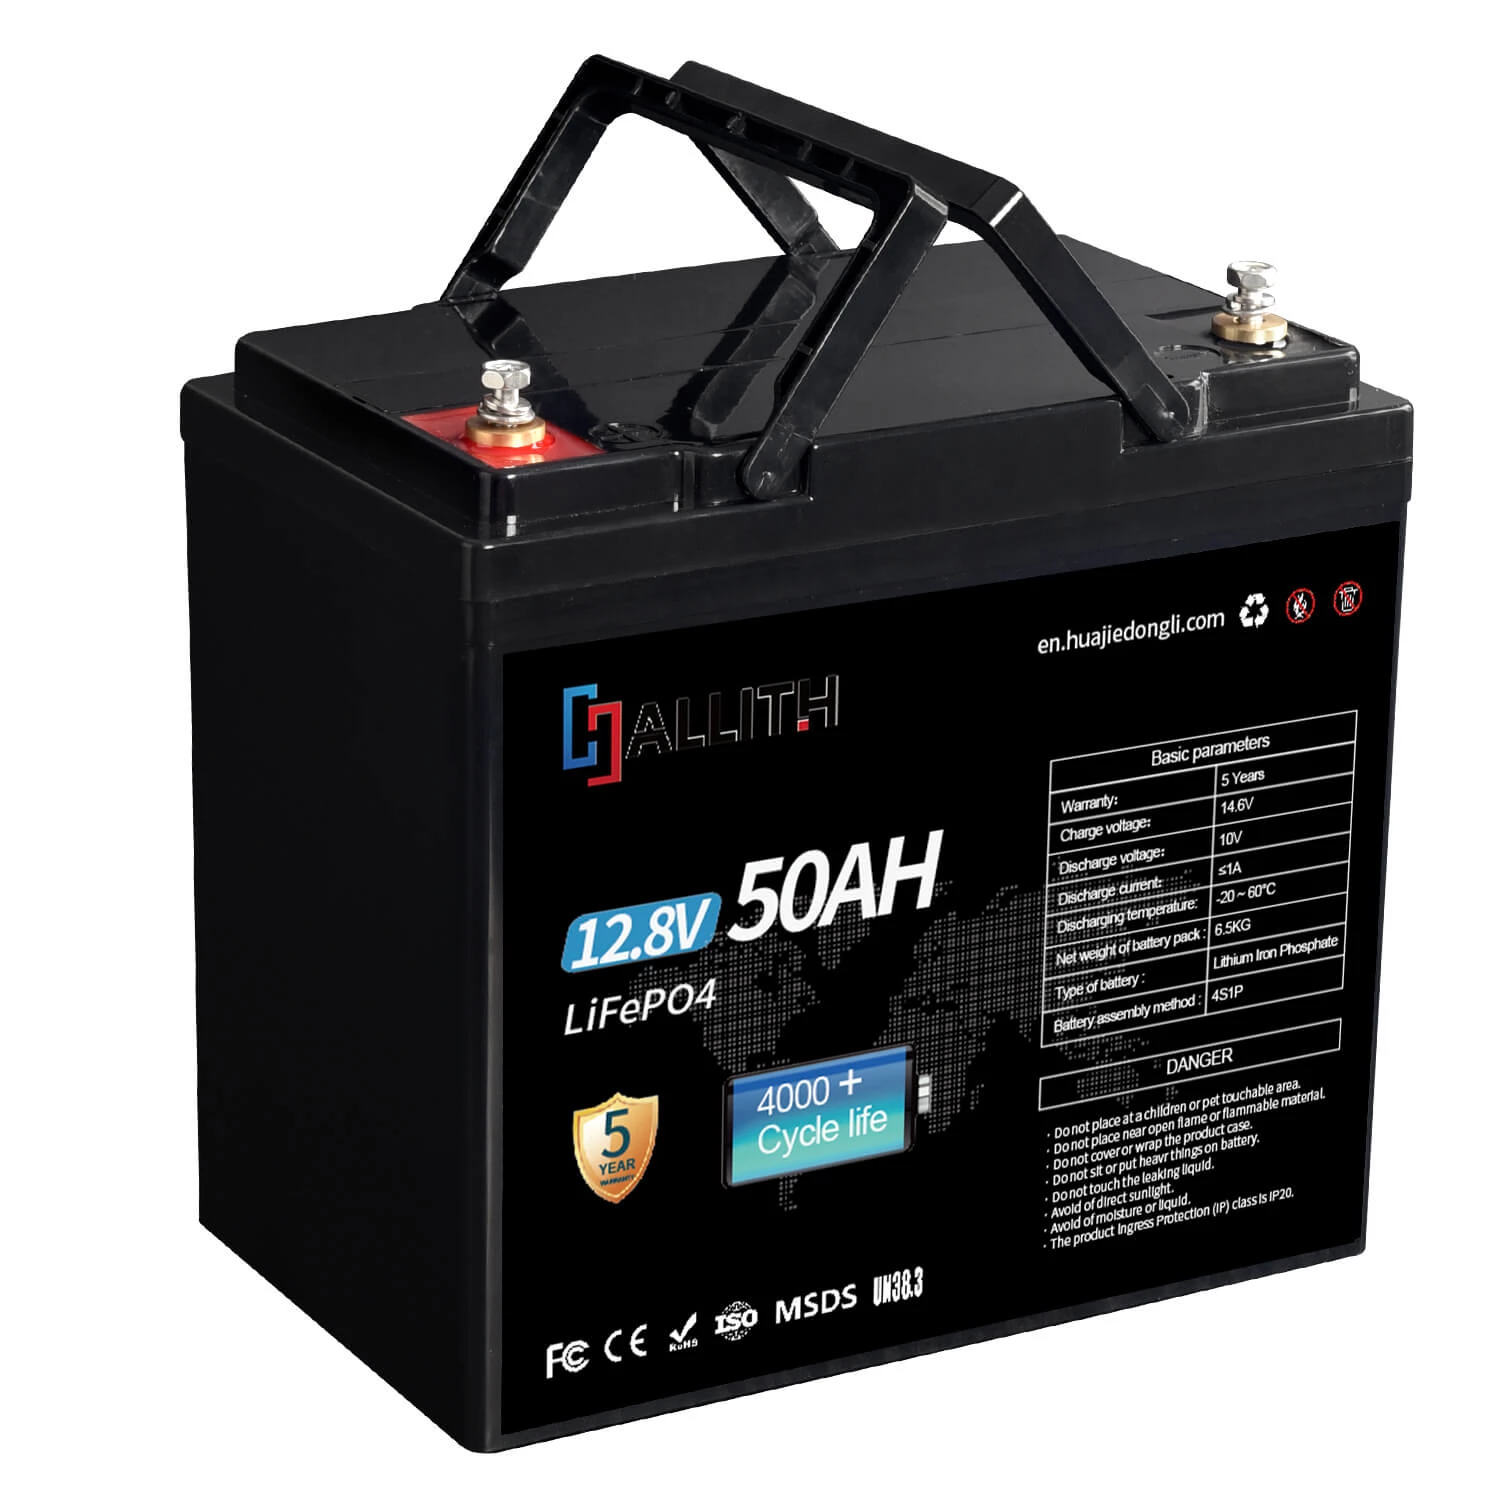 12V 50AH Lifepo4 batteripaket med BMS för solsystem